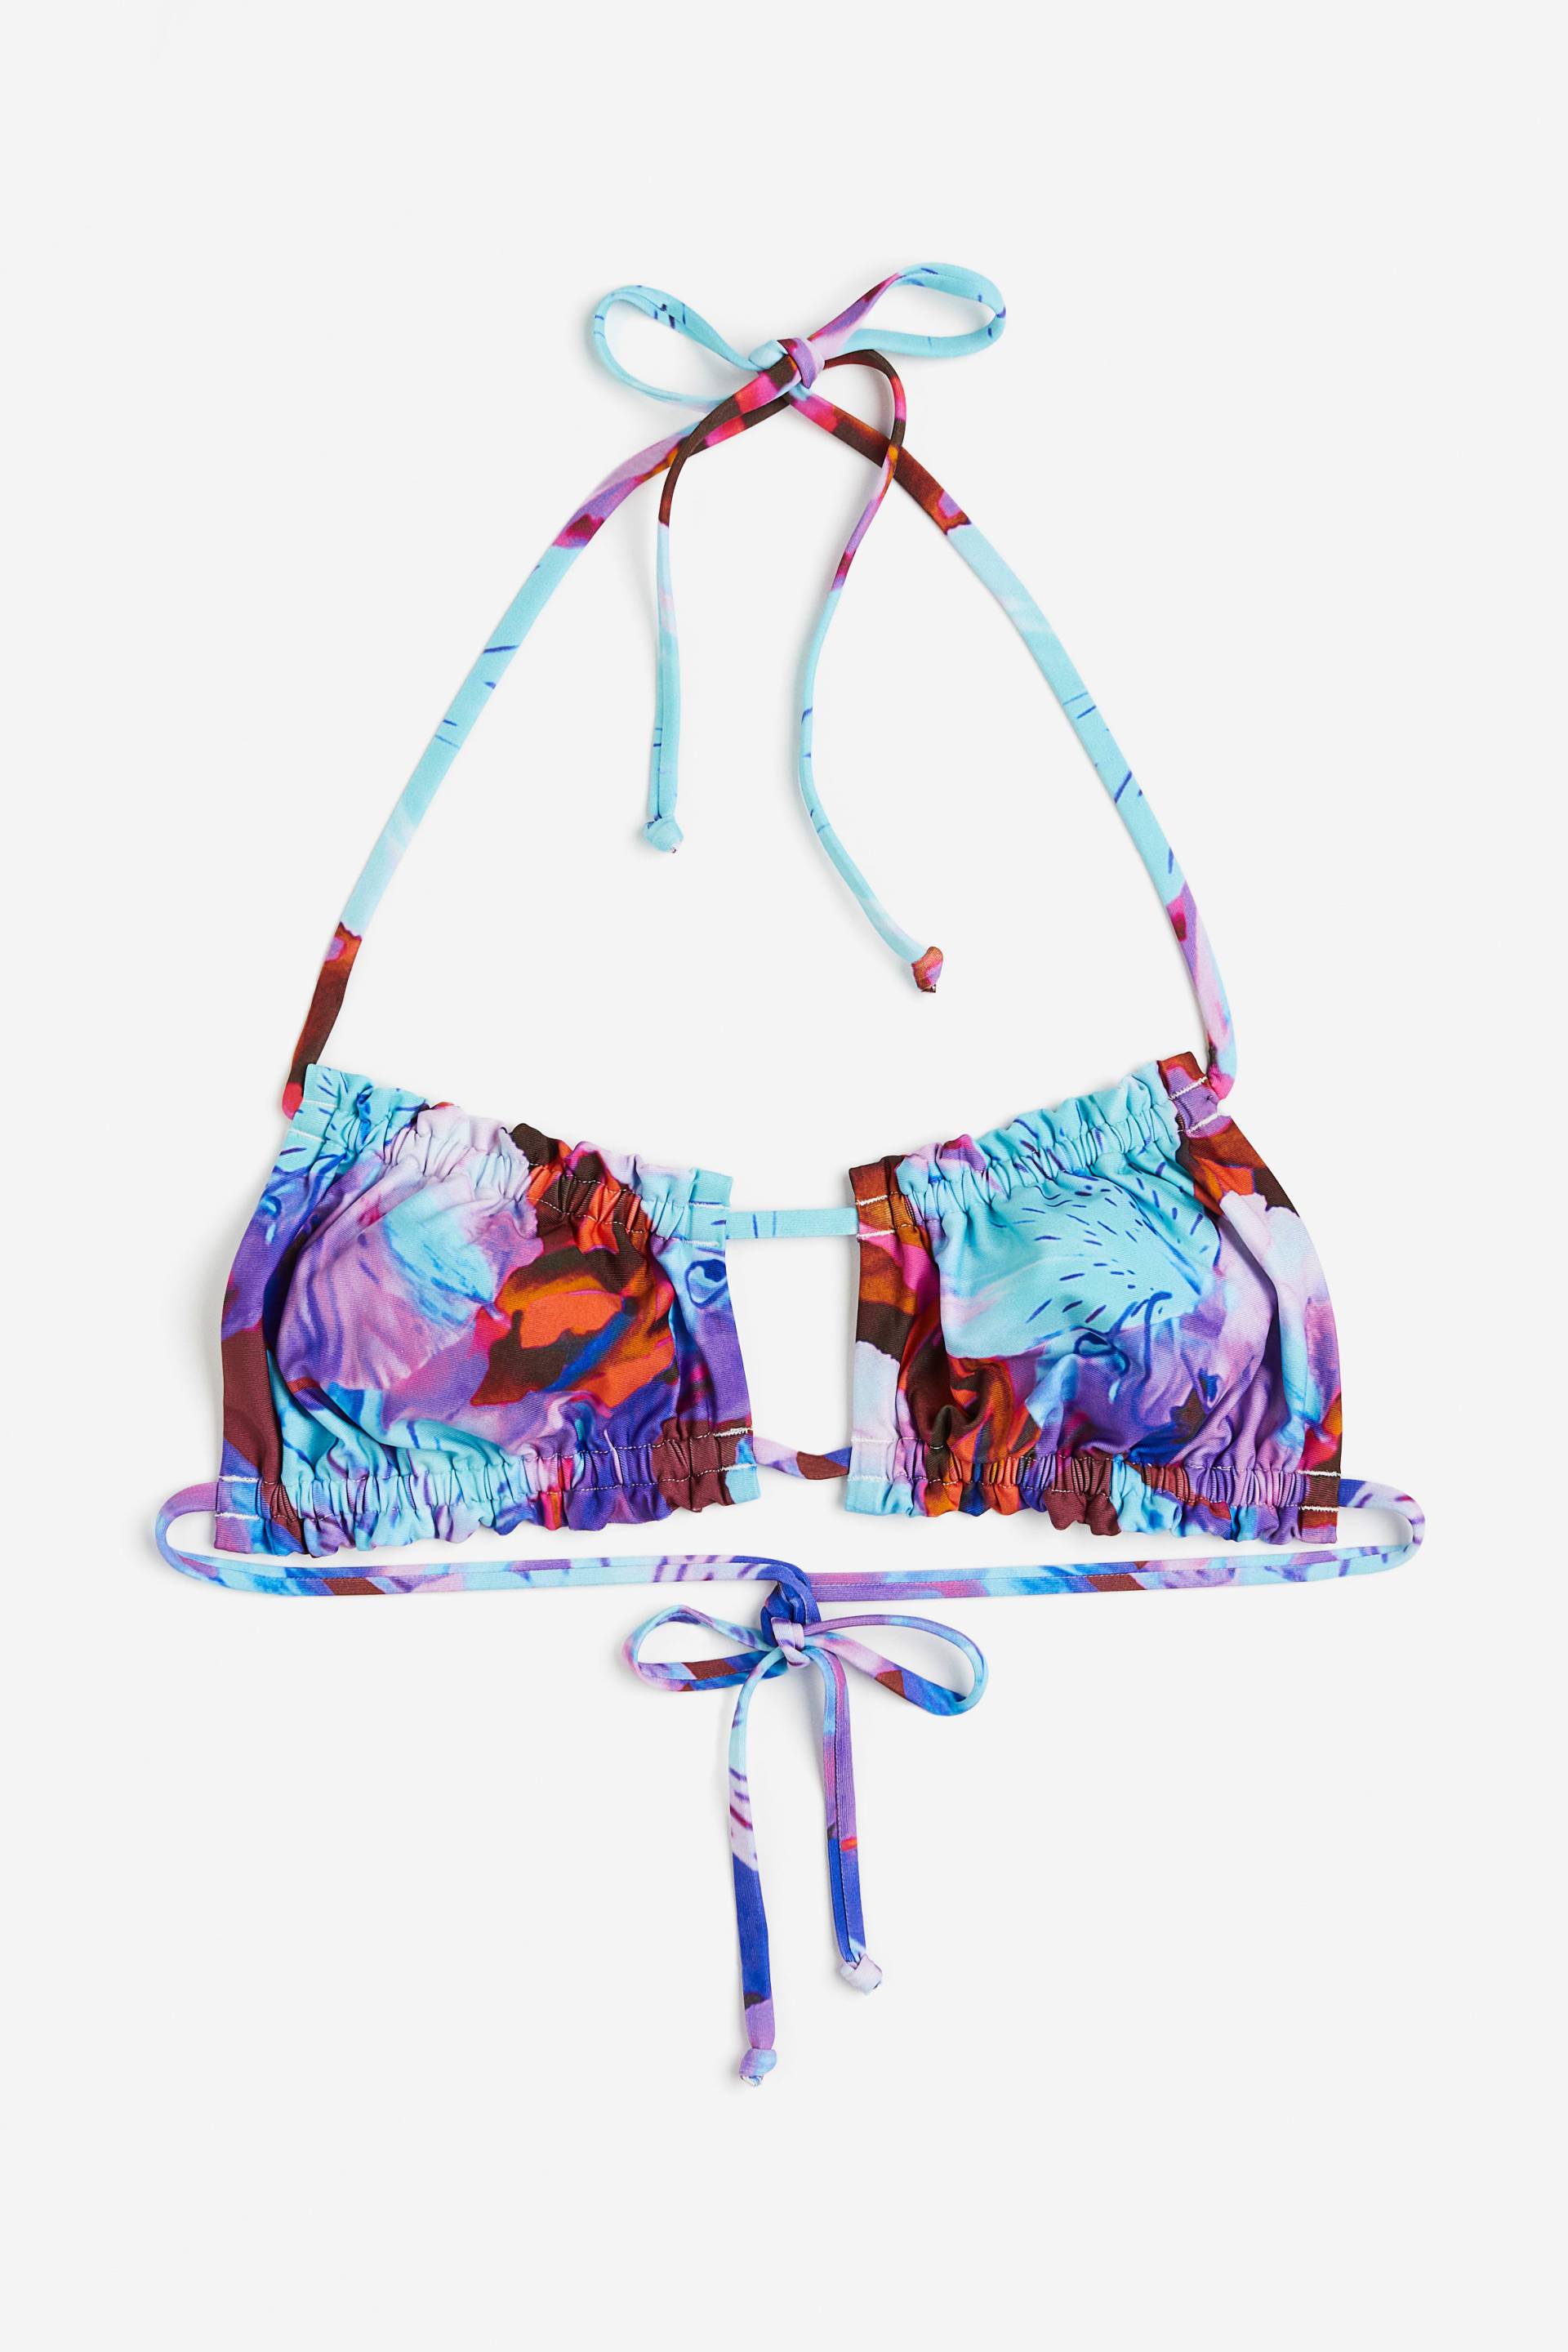 H&M Bikinitop mit Volants Blau/Geblümt, Bikini-Oberteil in Größe 34. Farbe: Blue/floral von H&M